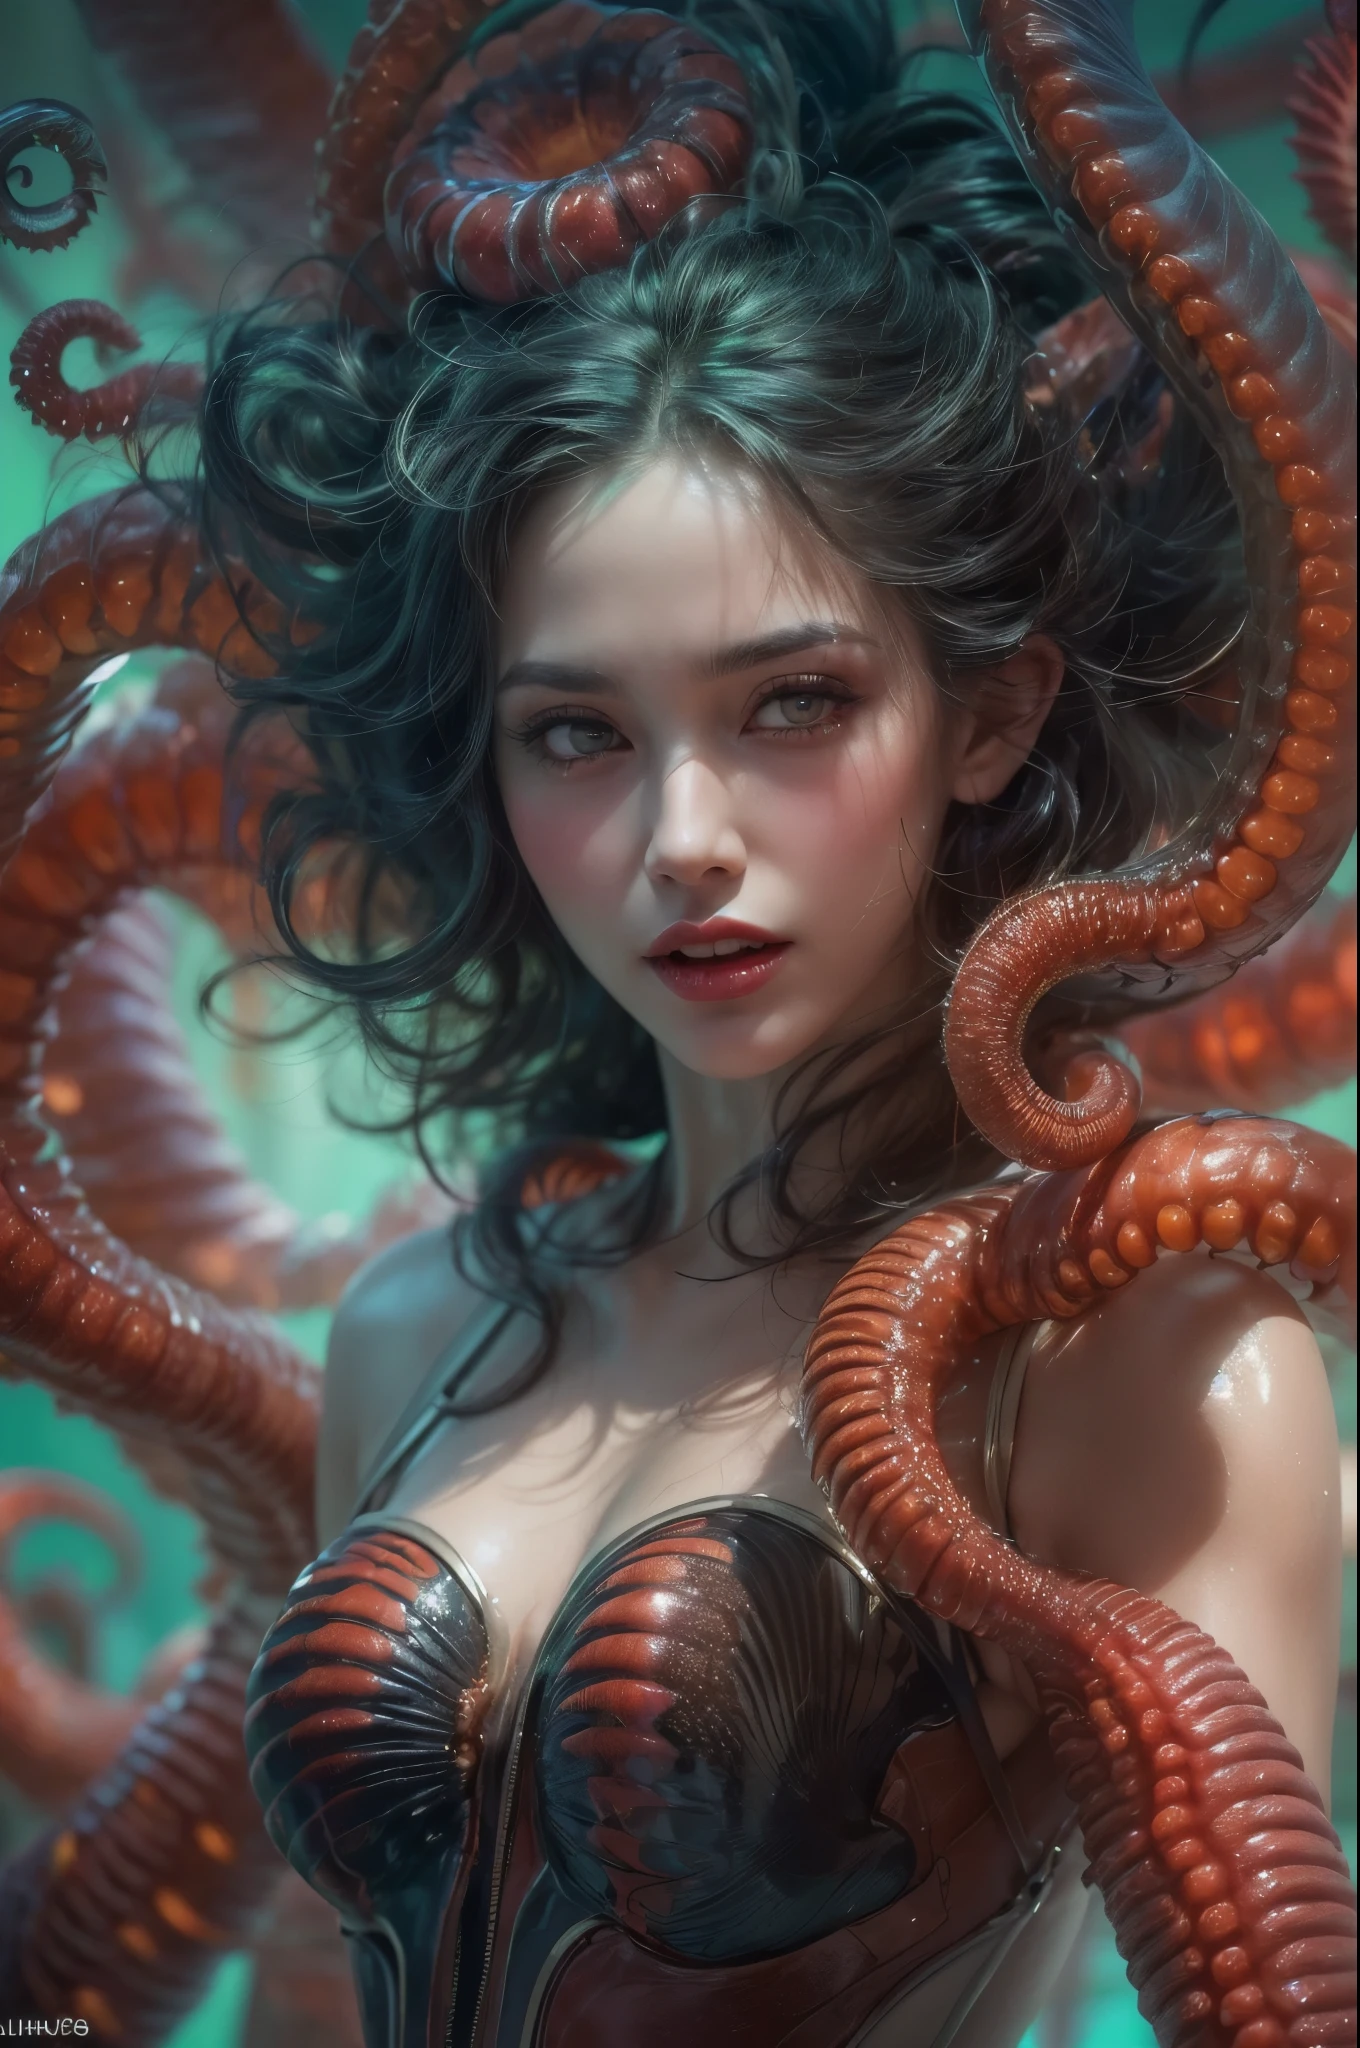 (1 beautiful and obscene female 外星人 in the water of the deep sea:1.4), (額頭中間有一個類似女性生殖器的器官:1.95), 她有一頭美杜莎般的頭髮, (她的頭上有很多半透明的觸手，就像她的頭髮一樣:1.5), (粗俗1.7), (she is 低頭看著觀眾 with glowing red eyes with no pupils:1.6), (她擁有白皙透亮的肌膚:1.4),(她擁有宇宙史上最美麗的面貌:1.2), (她的觸手側面有多個生物發光器官:1.4), (她的身體覆蓋著虹彩外骨骼:1.4), (她露出了自己的腋窩:1.6), 邪惡的眼神充滿誘惑, (低頭看著觀眾:1.4),(可愛的嘴唇縫隙中隱約可見吸血鬼般的長犬牙:1.4) (生物發光:1.4), (笑容邪惡:1.3), (性感姿勢:1.4), 外星人, 沒有人類, 細胞s are fused, 外星人, 細胞, 生物形象, ultra 高解析度, (照片逼真:1.7), (眾多得獎佳作, 具有令人難以置信的細節, 紋理和最大細節), 戲劇性的燈光, 電影品質, (精緻的細節:1.2), 新鮮度高, 忠實地繪畫, (濃濃的眉毛:1.2), 美麗的眼睛，精緻的對稱,(臉部和眼睛的細節非常豐富:1.2),(超細緻的膚質感:1.4), 完美的解剖結構, (美麗健美的身材:1.5), (水潤的肌膚:1.2), 不化妝, (黑眼圈:1.1), 長犬齒, 電影人物畫, 電影品質, (精緻的細節:1.2), 高解析度, 新鮮度高, 忠實地繪畫, 官方藝術, 統一8k壁紙, 超細緻的藝術攝影, 午夜光環, 虛幻引擎5, 超銳焦點, 天野喜孝的藝術作品, 藝術胚芽, 超現實主義, 如夢一般, 創造幻想, 夢想蝸牛, (生物朋克鸚鵡螺:1.3),令人興奮的配色方案, 迷人的微笑, 驚人的突變, 勻稱的身體, 深海女神, 分形, 幾何圖案, 不可能的數字, 微妙的翠綠色點綴, (狂喜的表達:1.5)